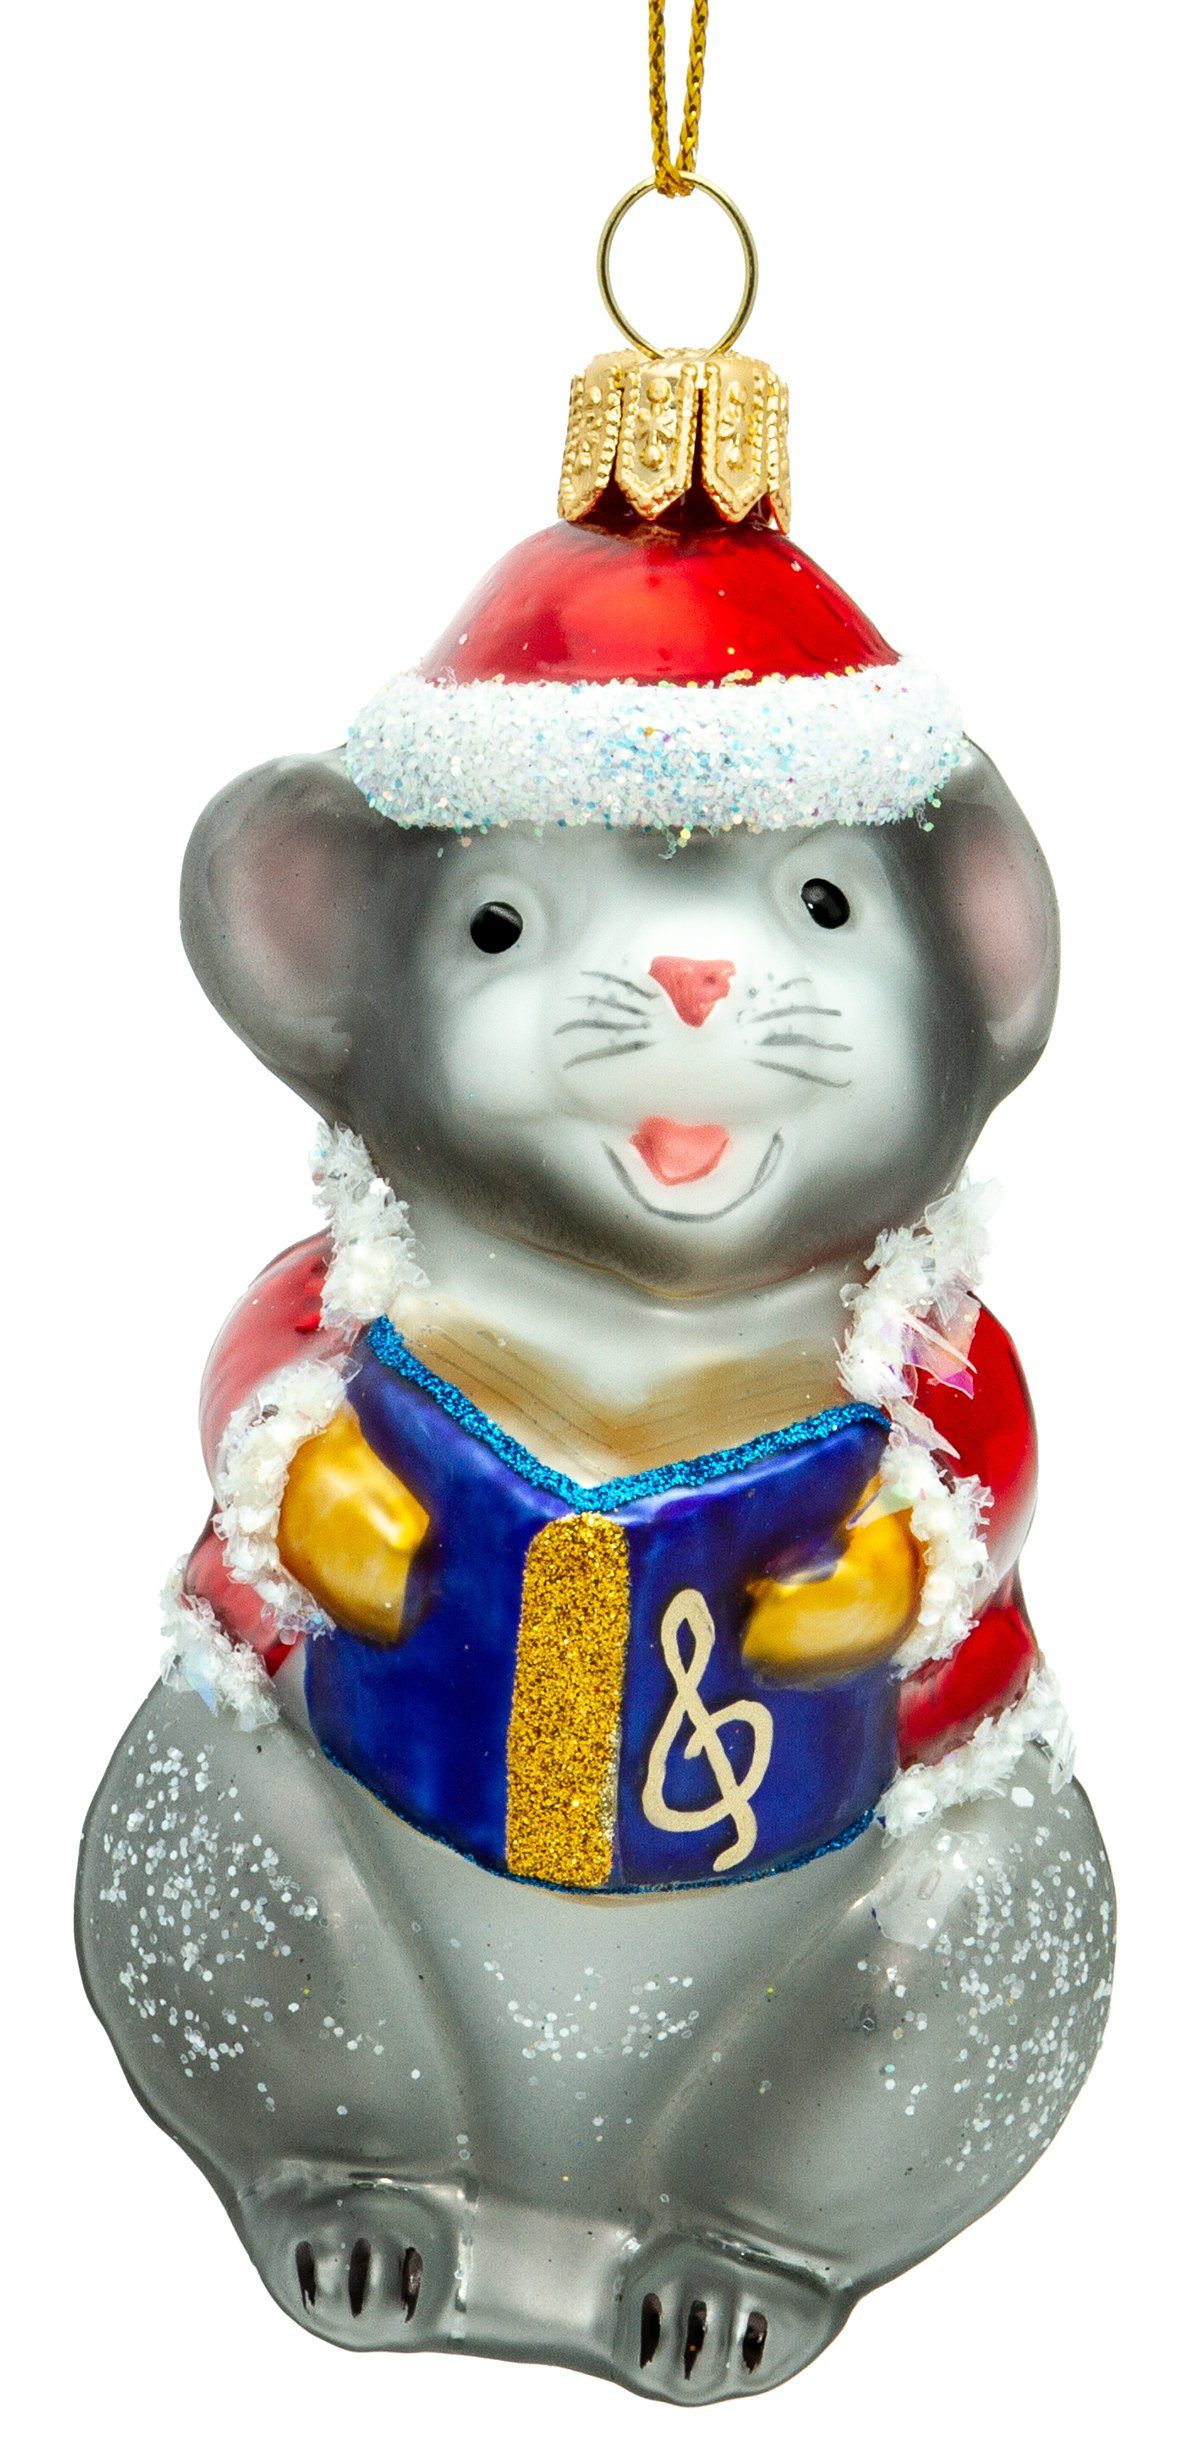 SIKORA Christbaumschmuck »BS722 singende Maus mit Weihnachtsmütze Glas  Figur Weihnachtsbaum Anhänger - Premium Line« online kaufen | OTTO